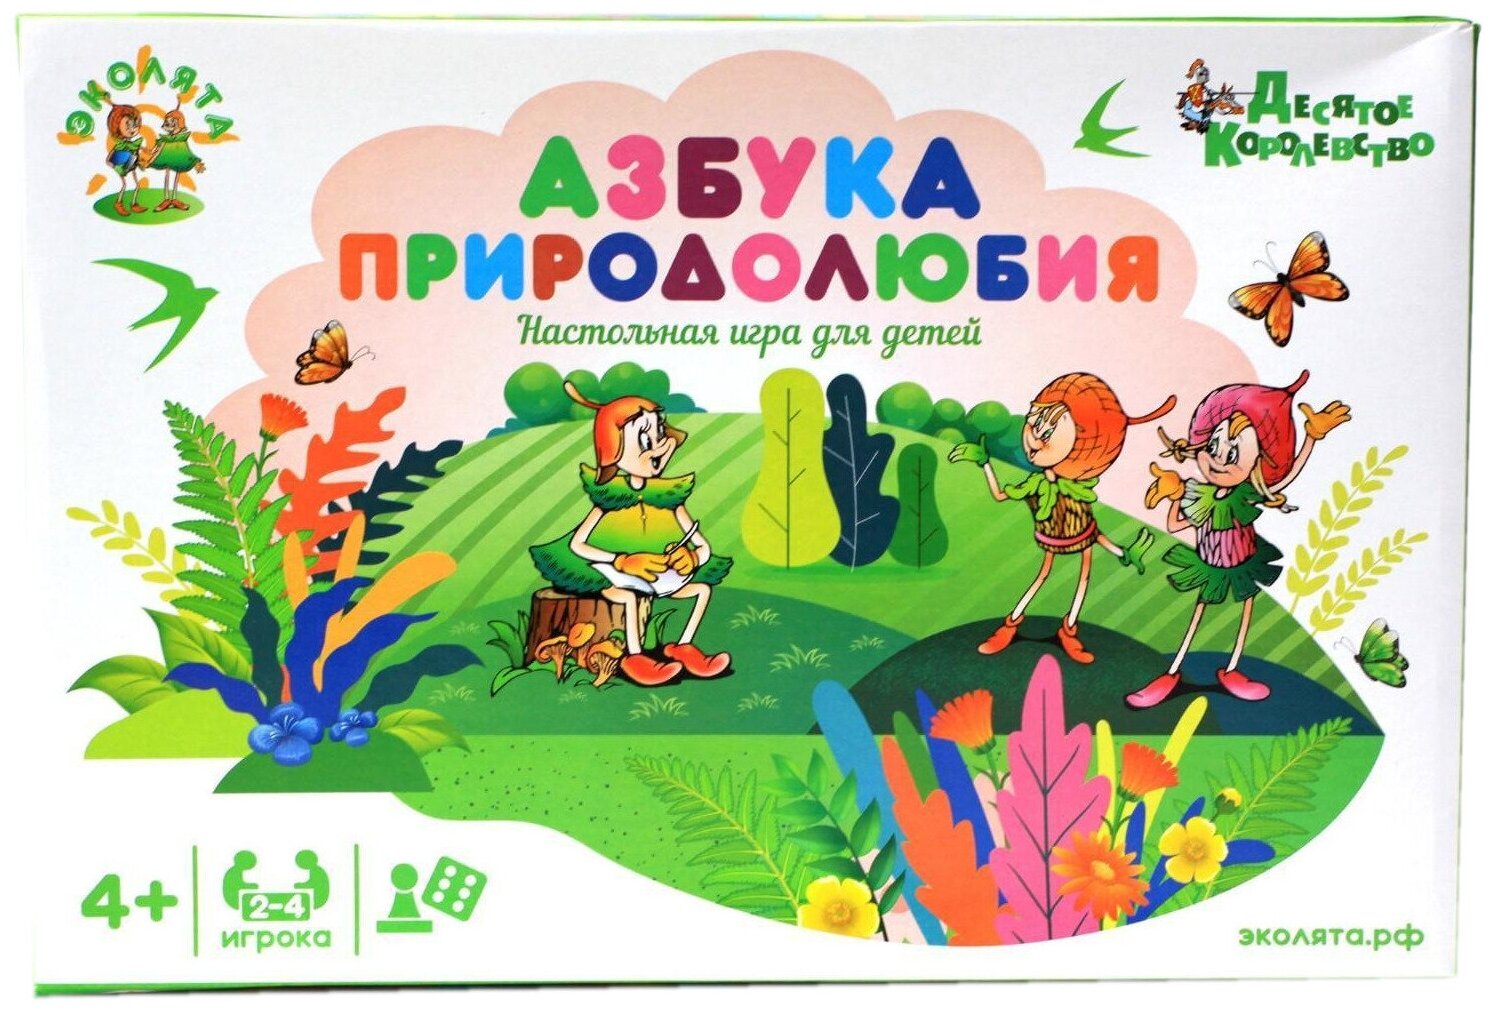 Настольная игра-ходилка "Азбука природолюбия", детская бродилка, игра-путешествие с кубиком и фишками